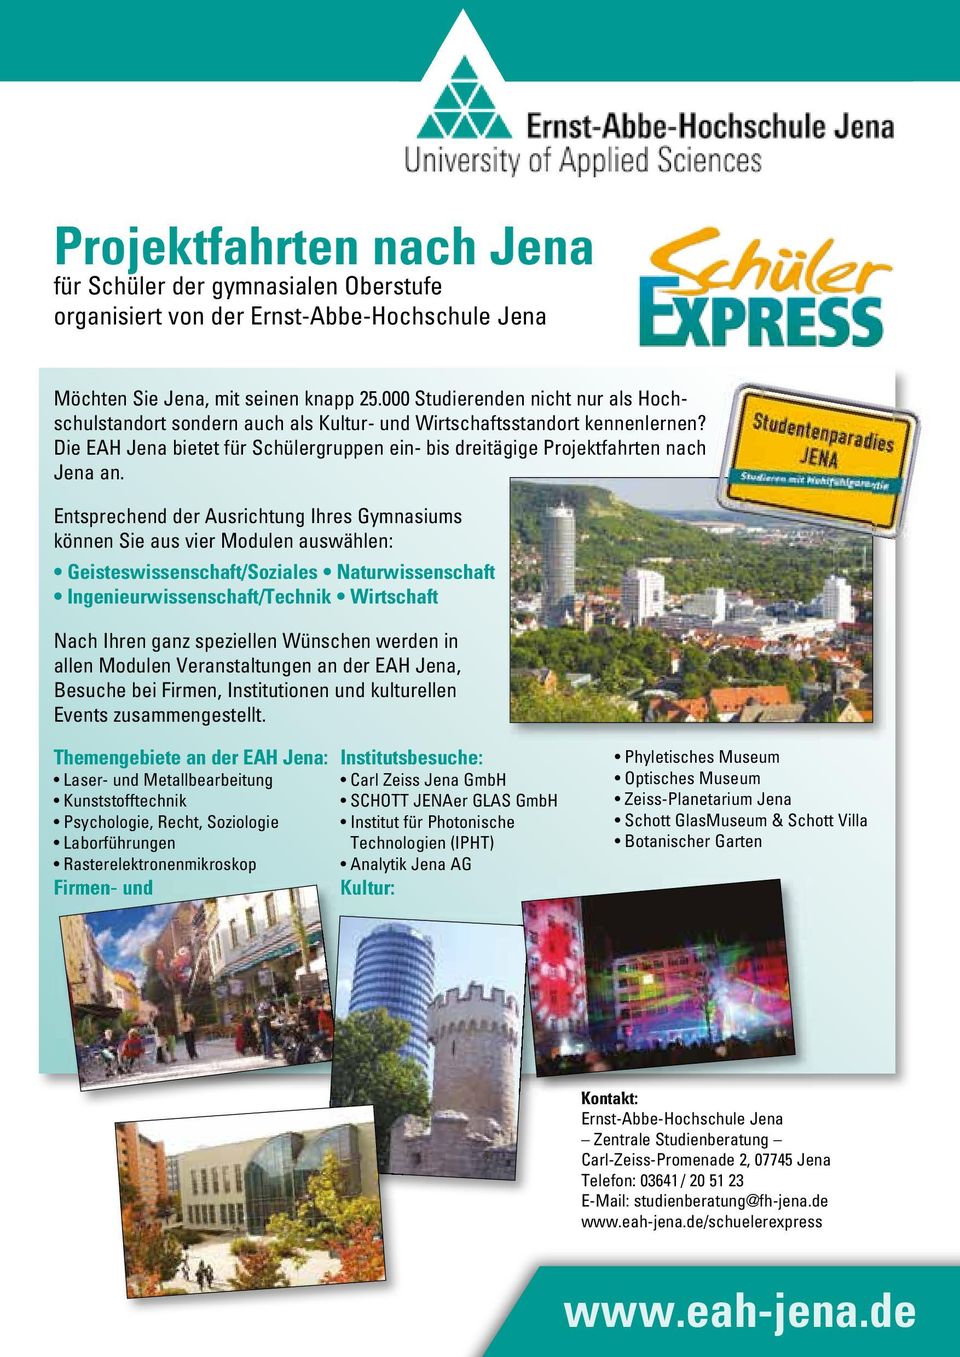 Die EAH Jena bietet für Schüler gruppen ein- bis dreitägige Projekt fahrten nach Jena an.